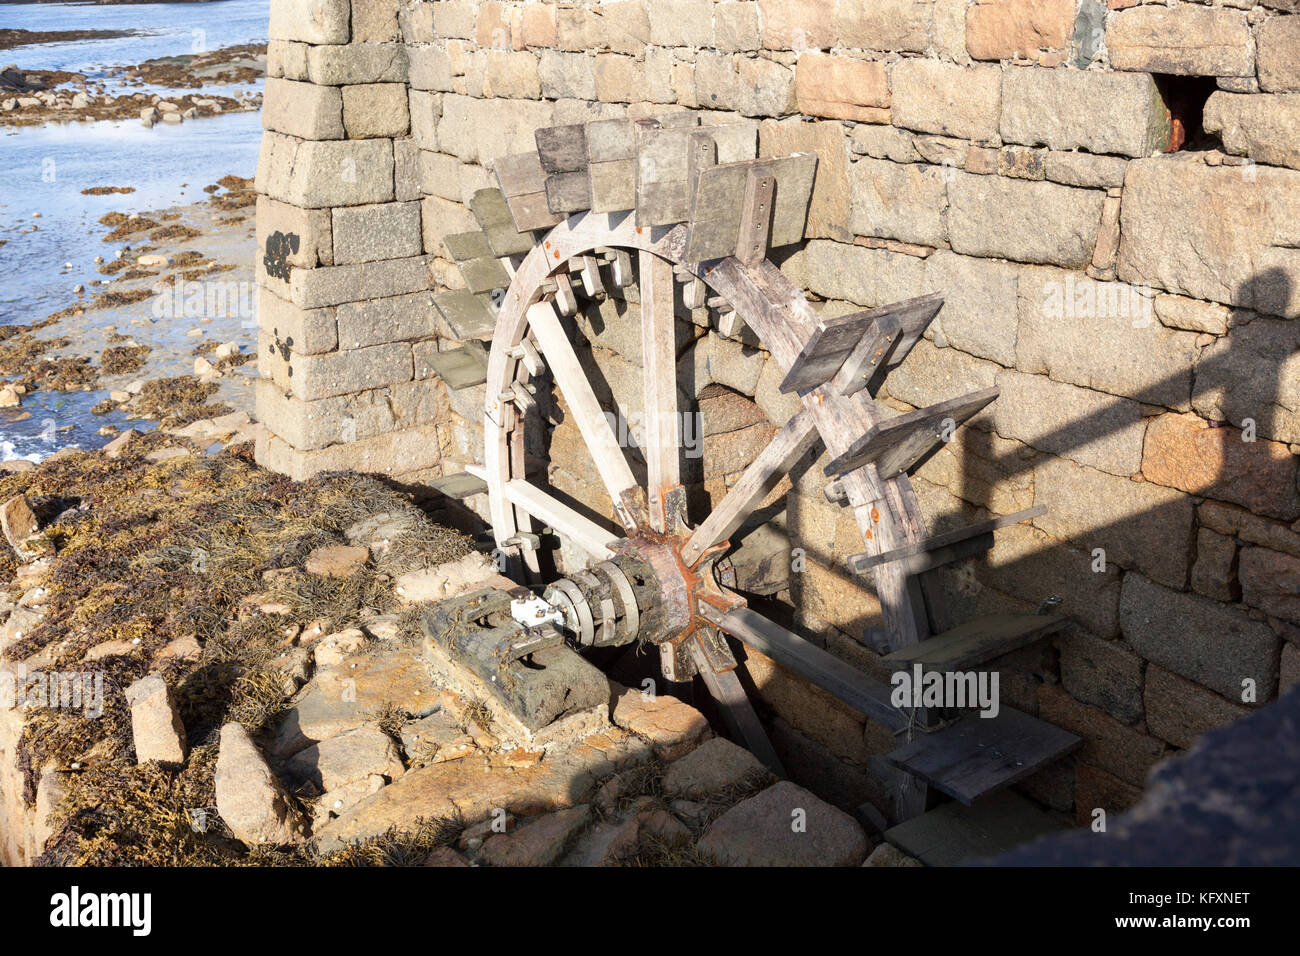 Le moulin à marée du Birlot roue hydraulique, dans l'île de Bréhat (Bretagne - France). Ce moulin à eau est entraîné indirectement par les marées montent et descendent, Banque D'Images